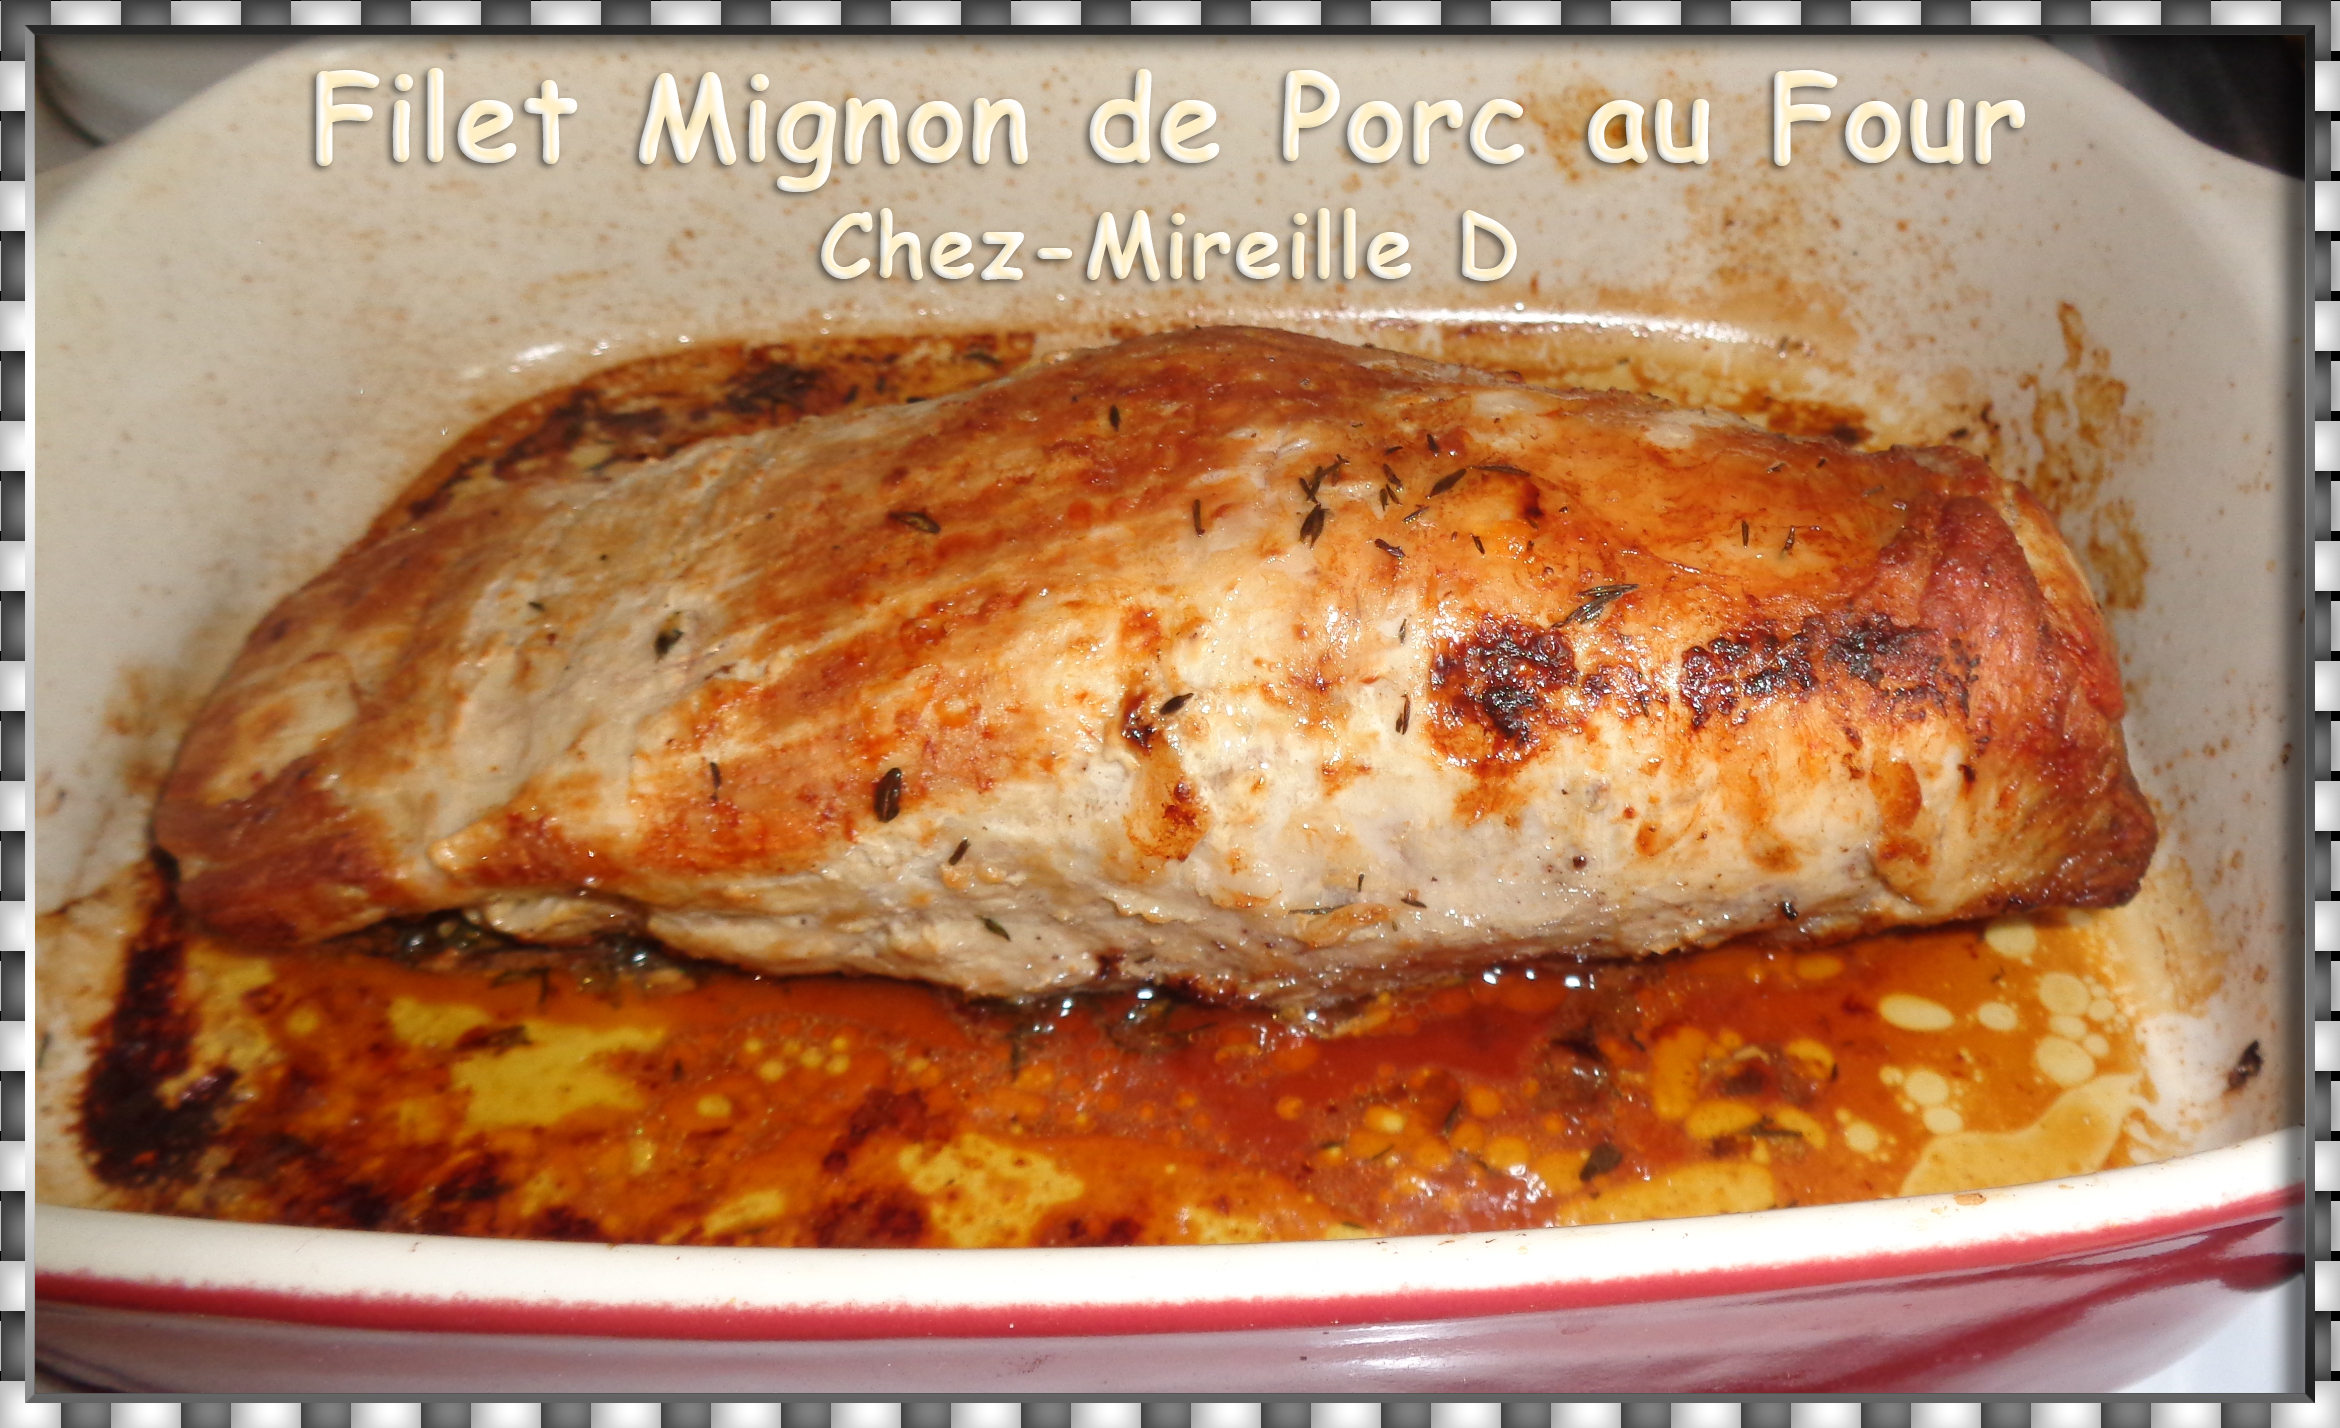 Filet Mignon de Porc au Four - Chez-Mireille D